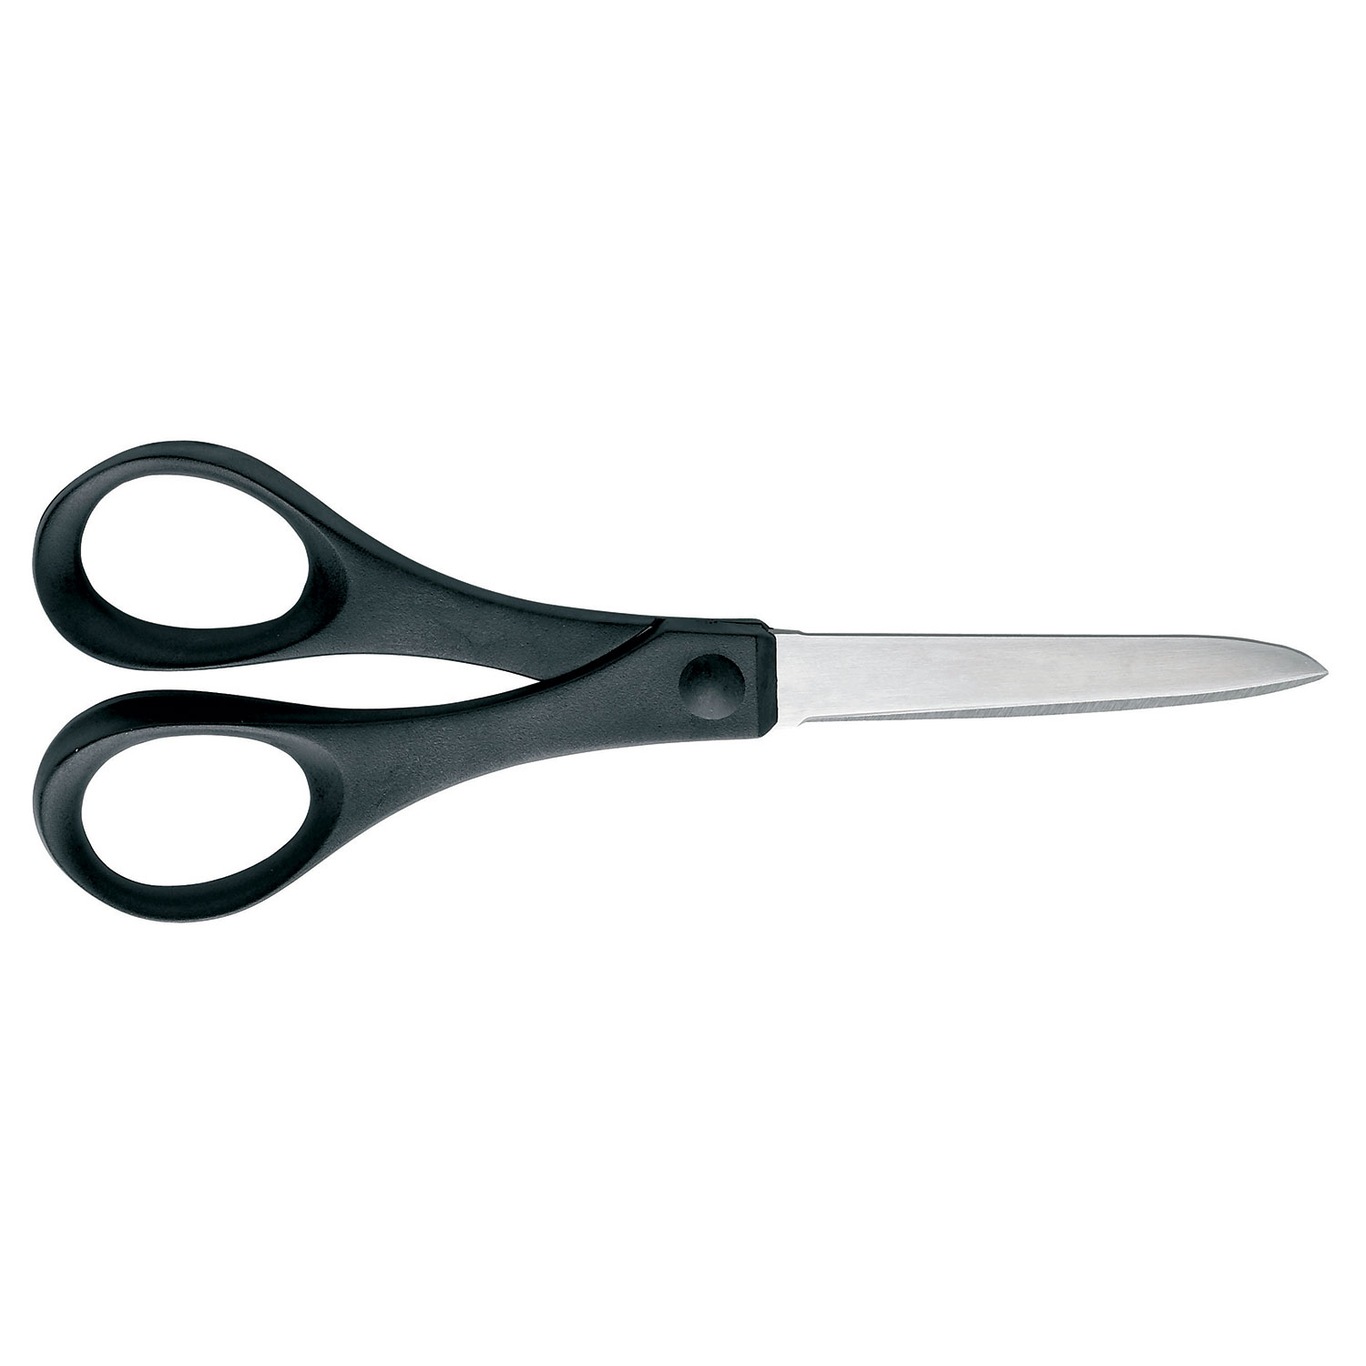 https://royaldesign.com/image/2/fiskars-essential-paper-scissors-18-cm-0?w=800&quality=80